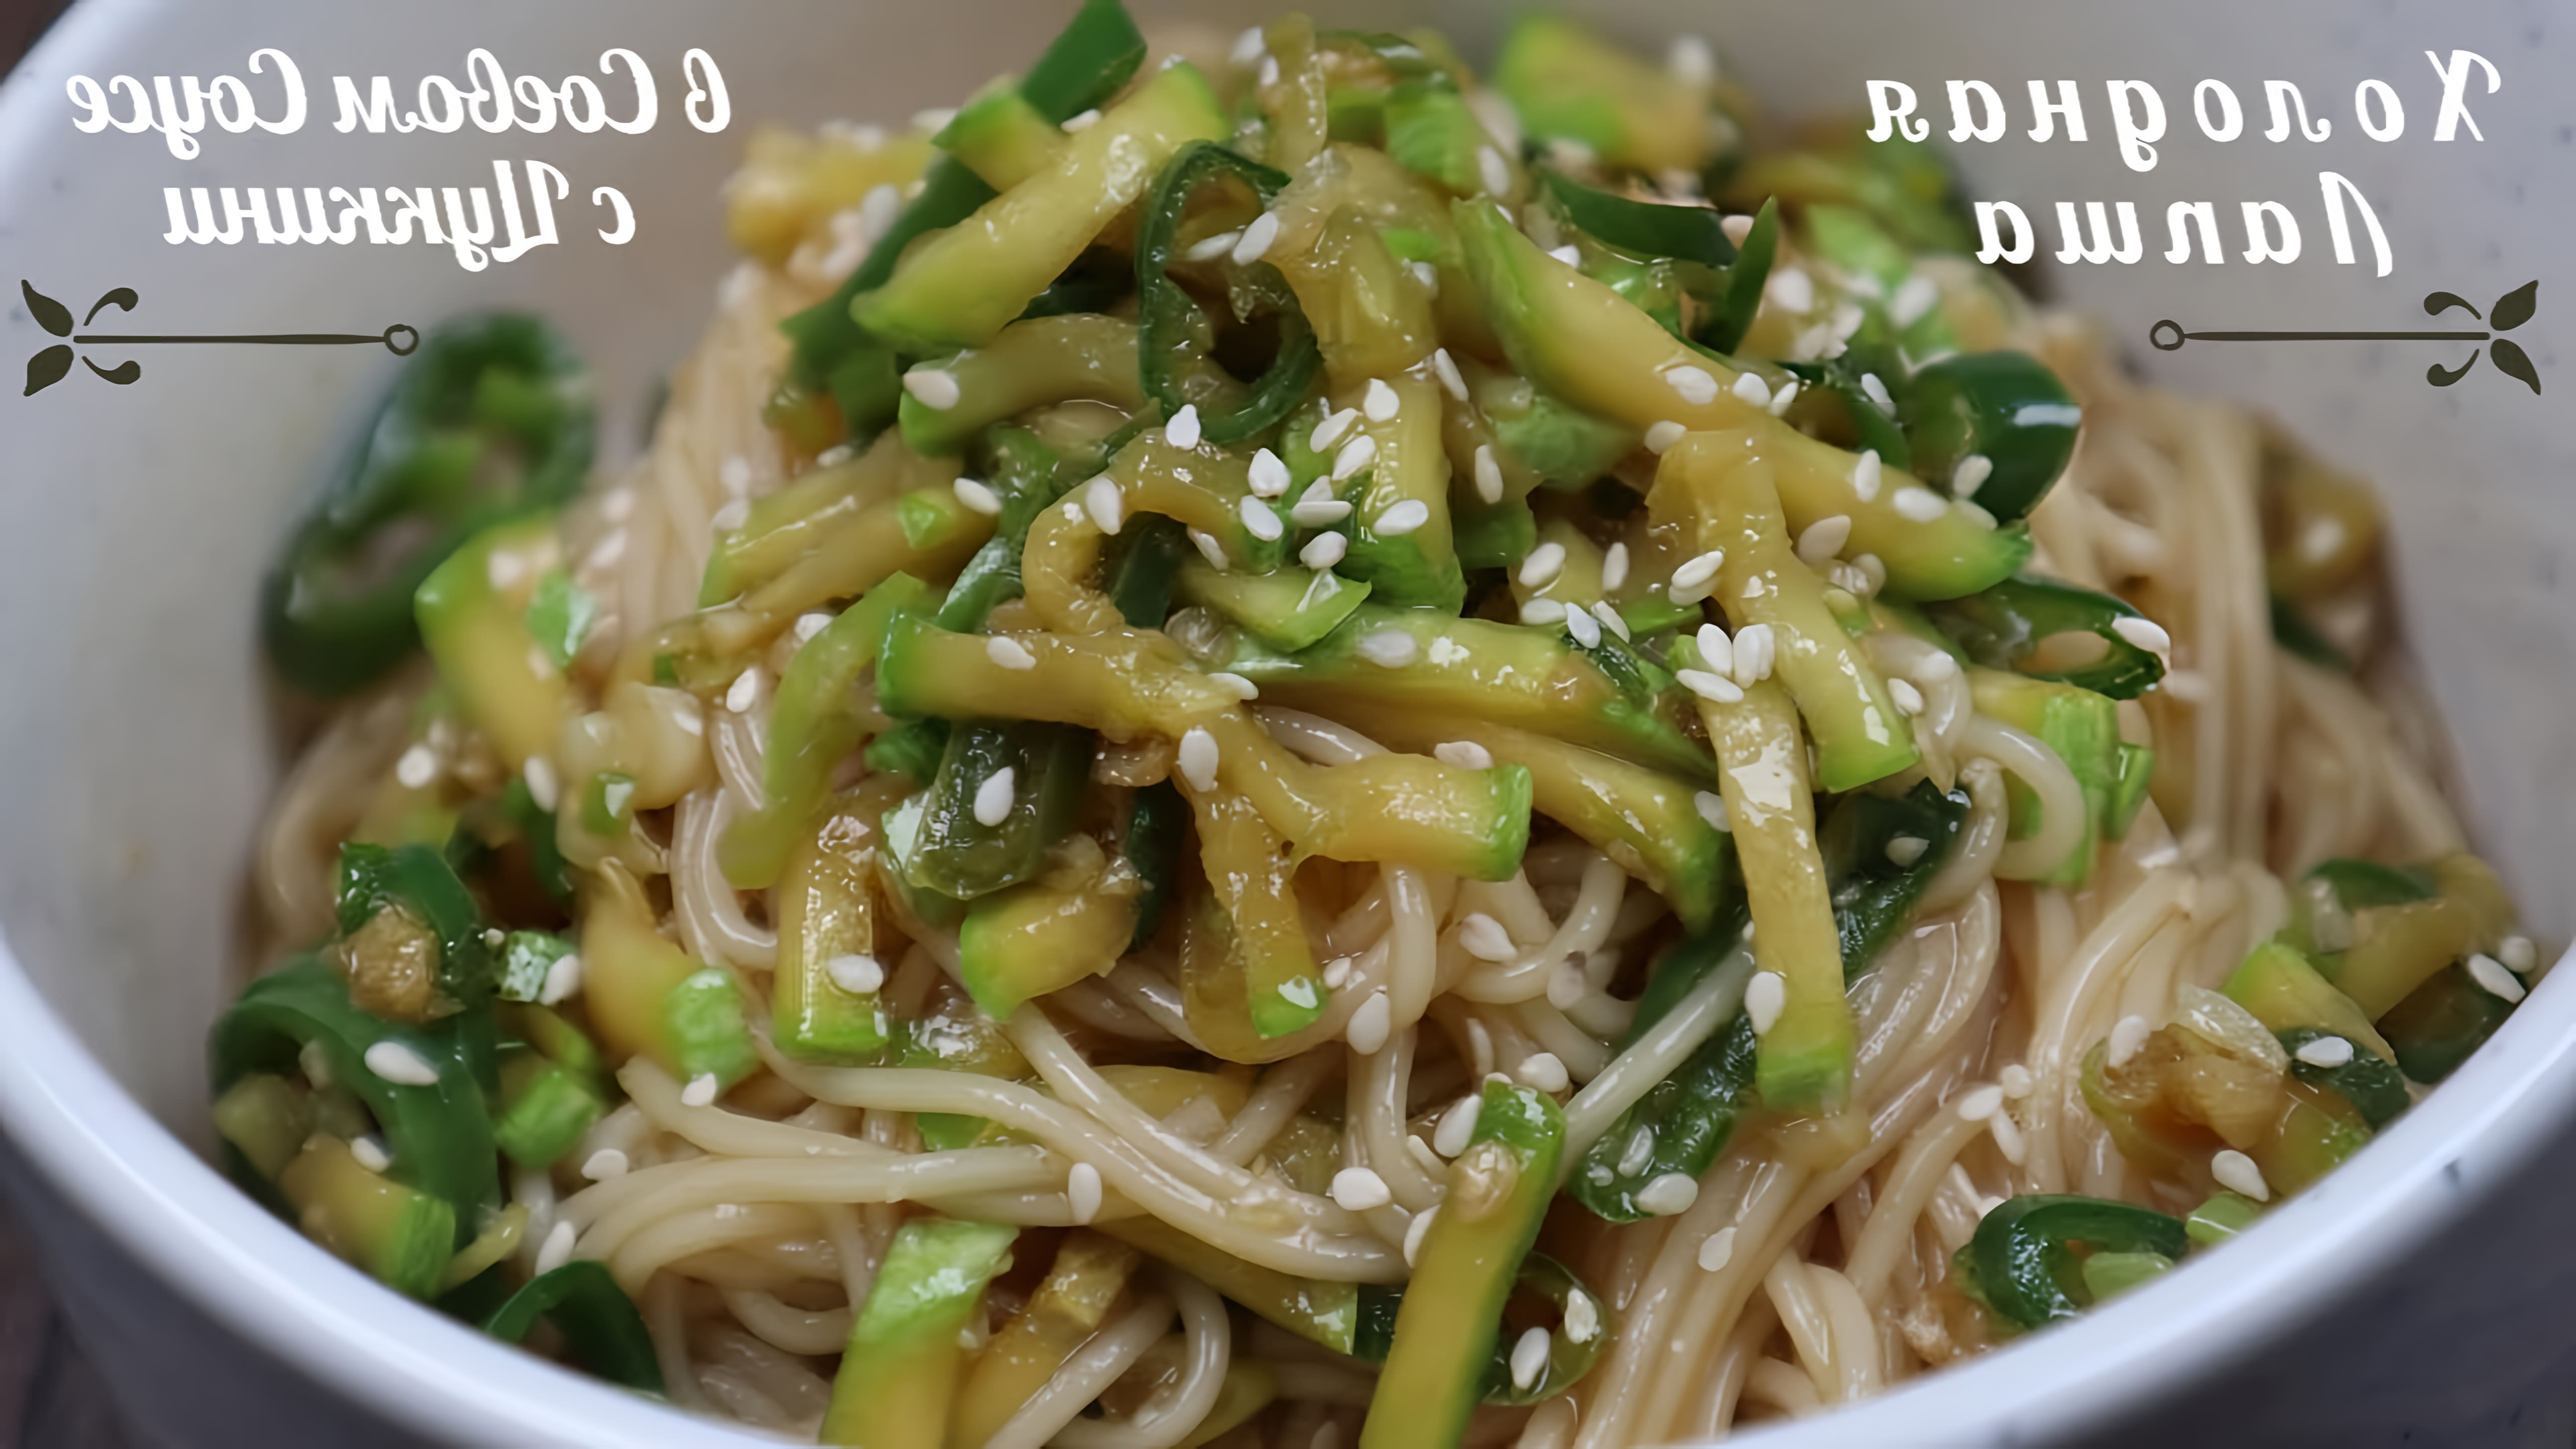 В этом видео демонстрируется рецепт корейской холодной лапши с соевым соусом и цуккини